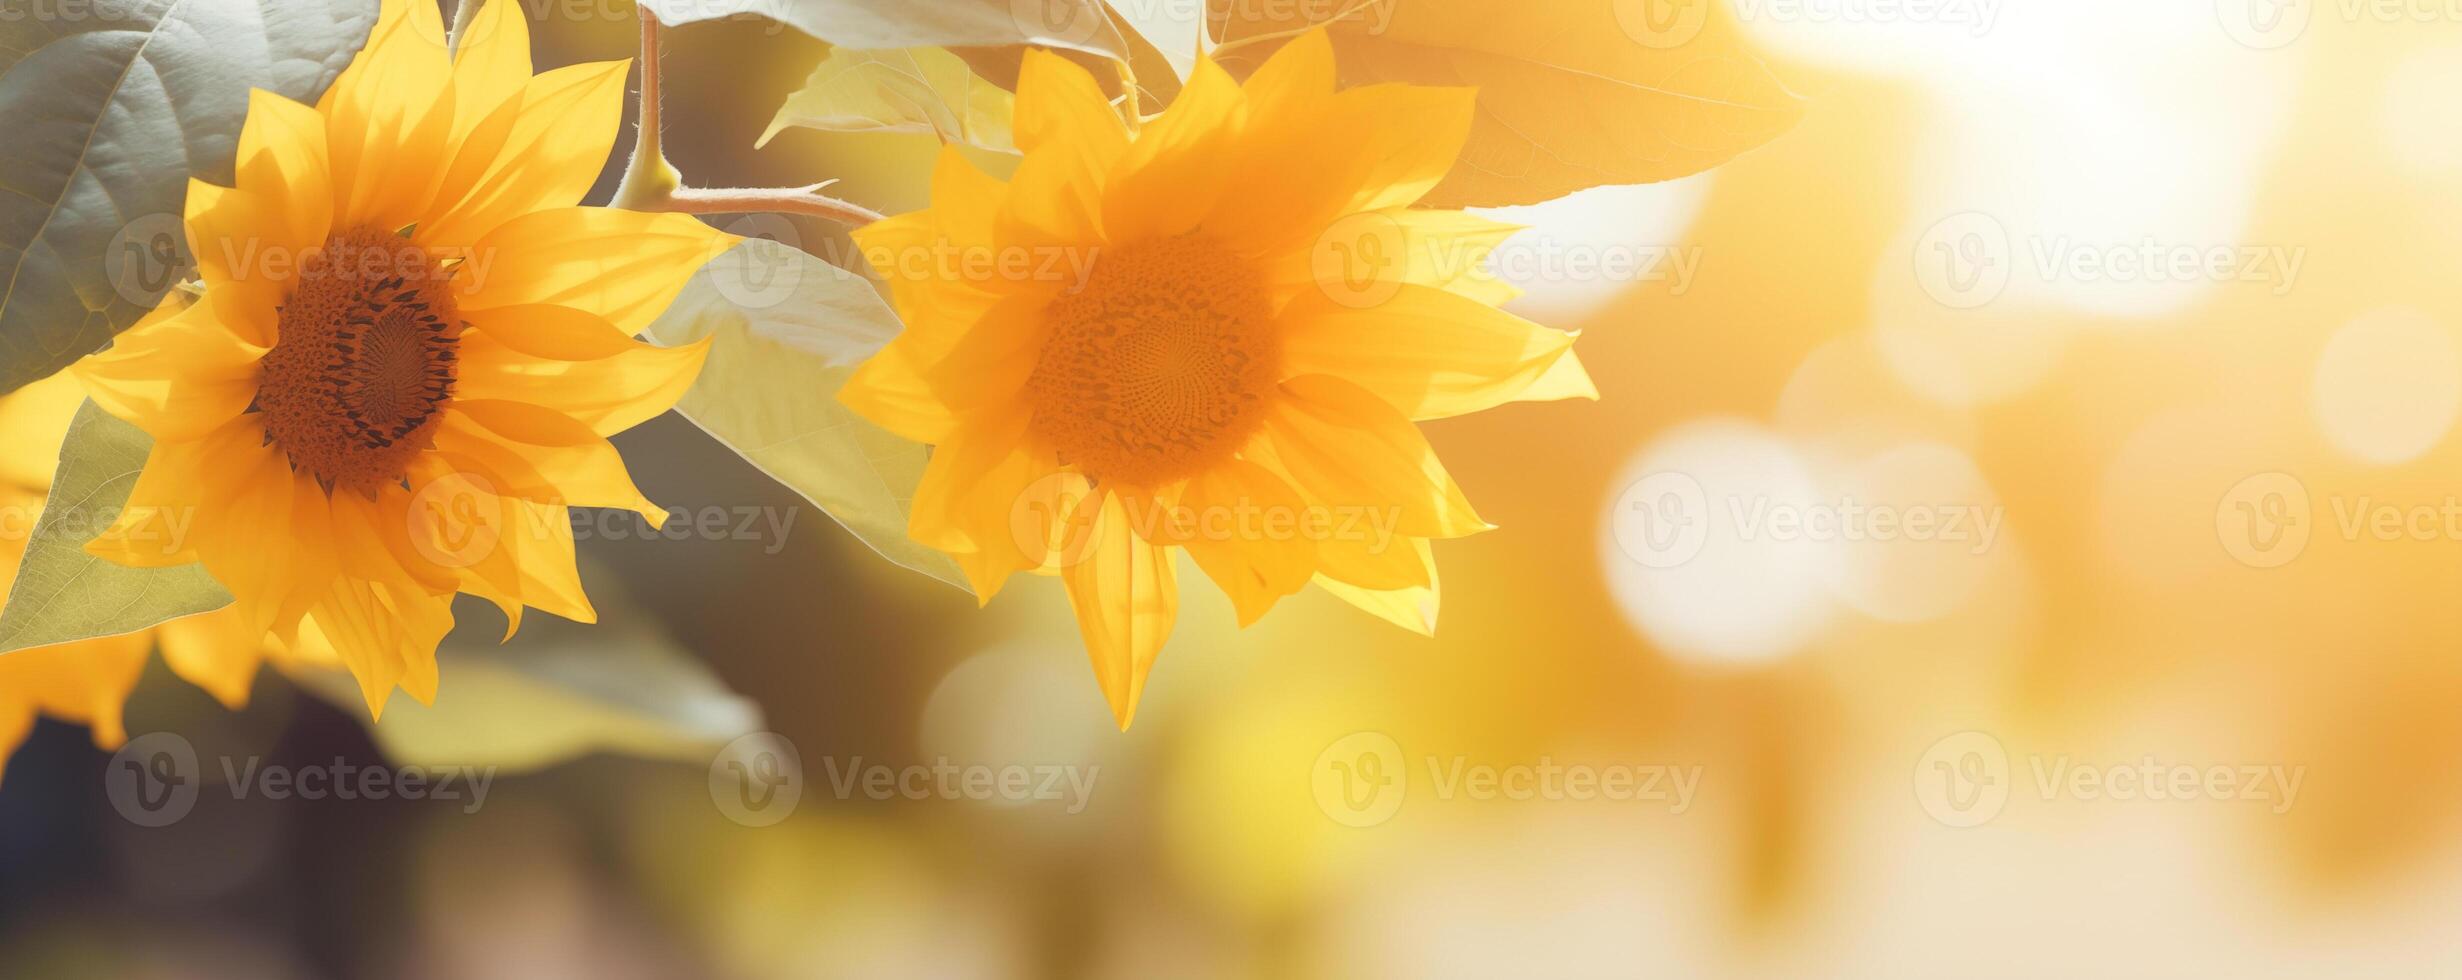 brillante girasol bandera con dorado pétalos en iluminado por el sol verano resplandor foto